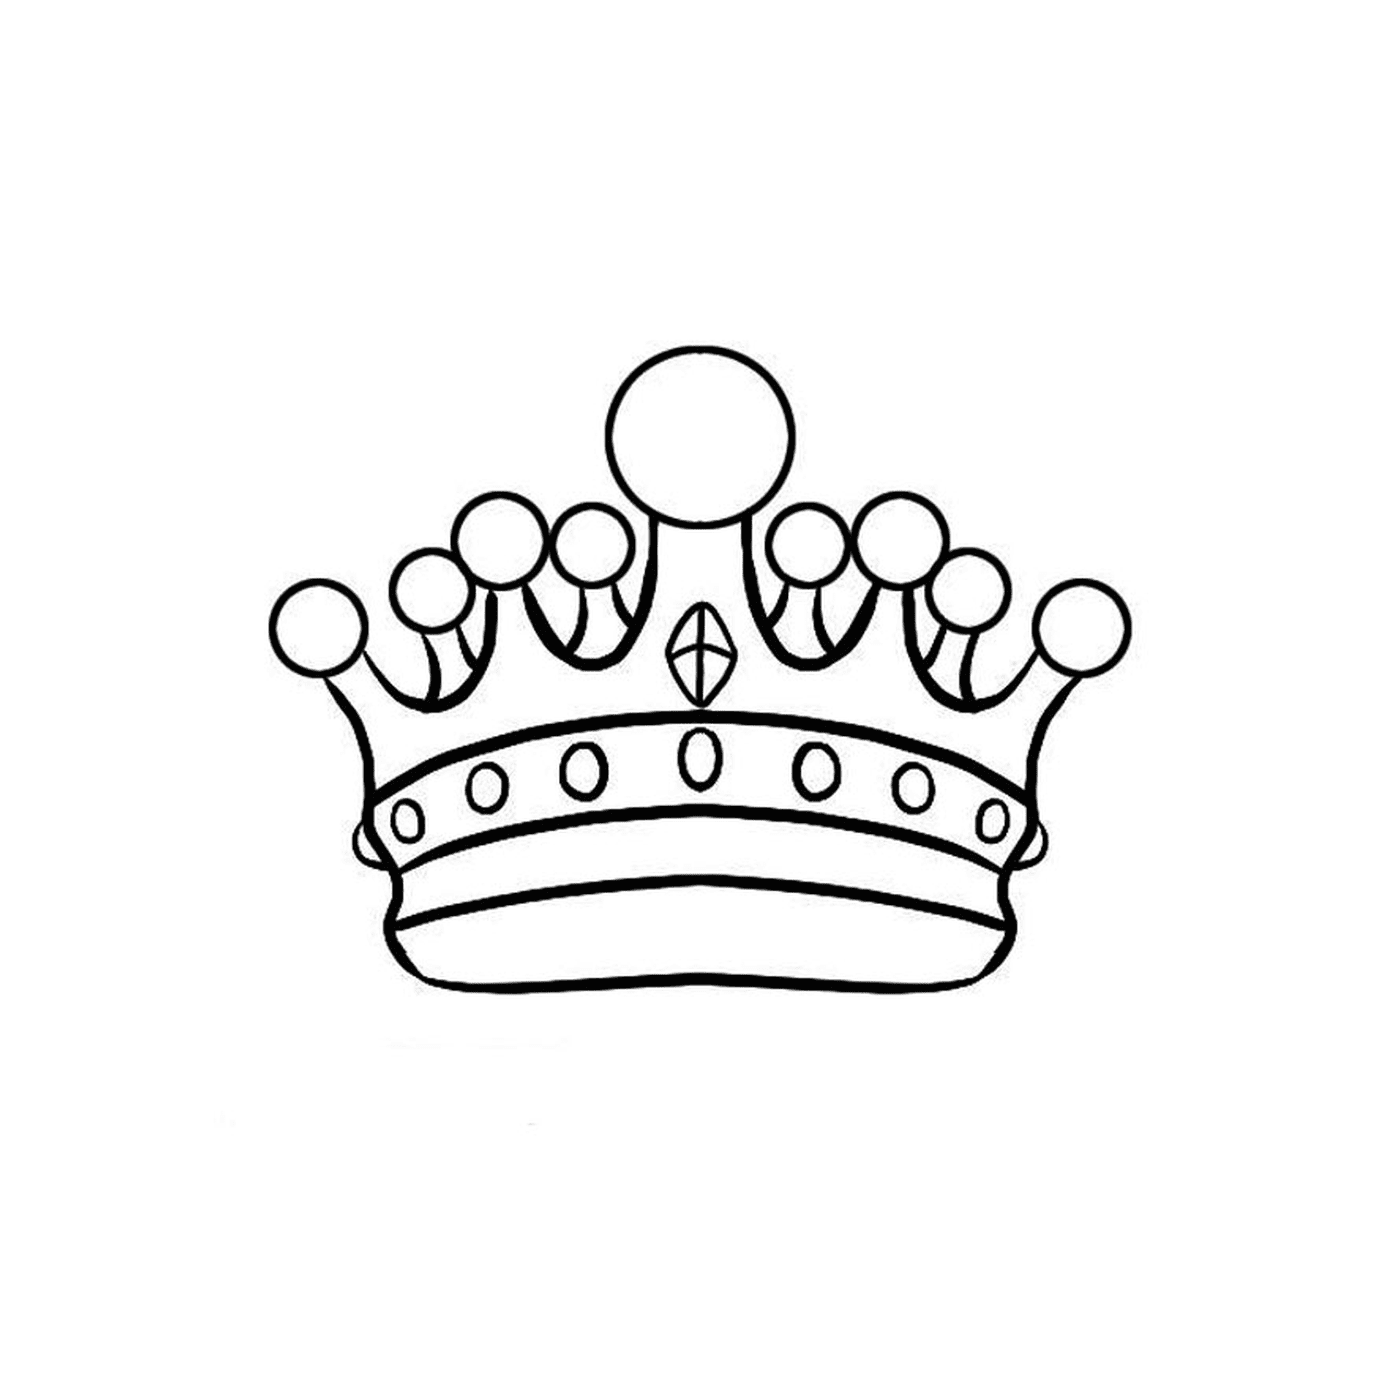  Eine Krone auf weißem Hintergrund 